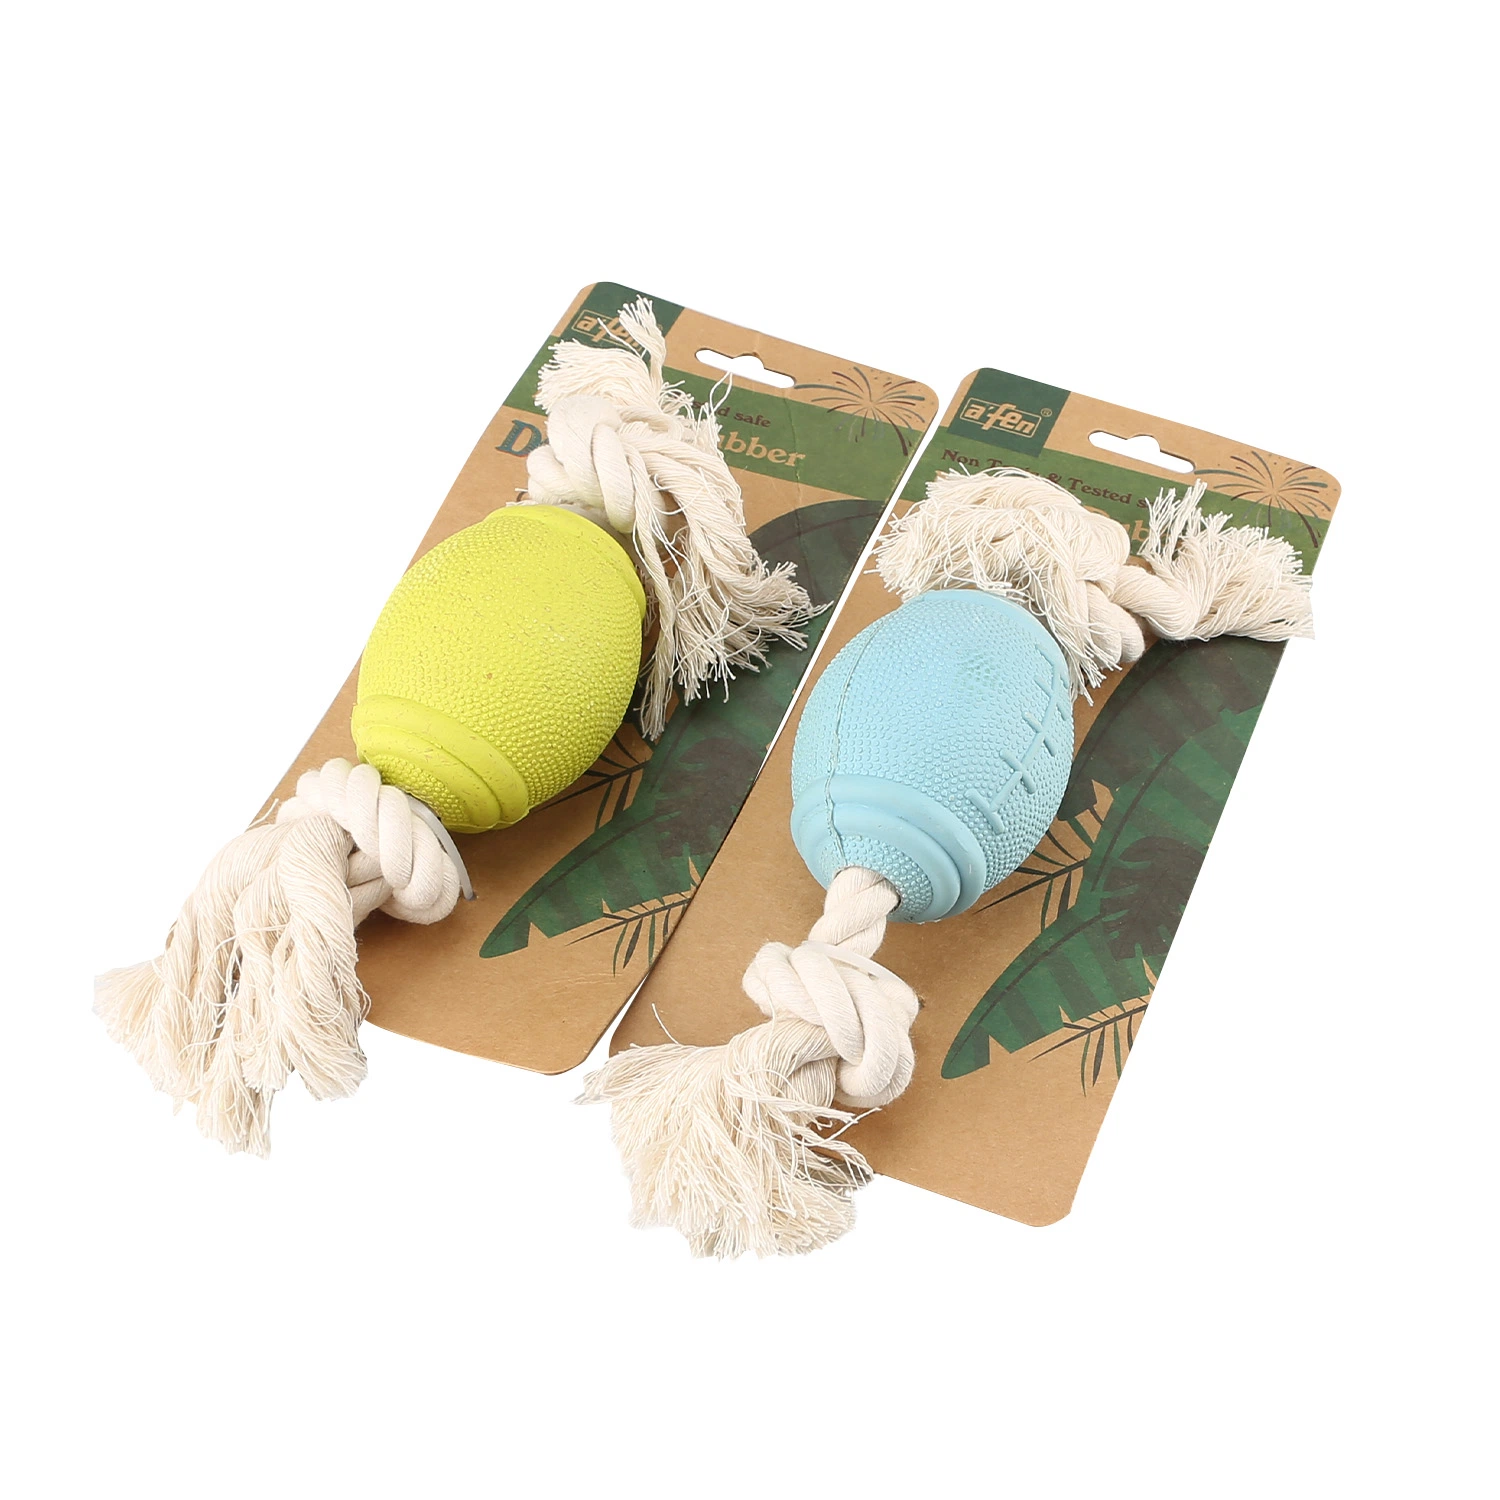 Alta qualidade Adicionar Bamboo fibra Eco ambiental cão Toy borracha Brinquedos para animais de estimação/guisado de borracha brinquedo com forma de osso Bola de Animais de Animais de Estimação com corda